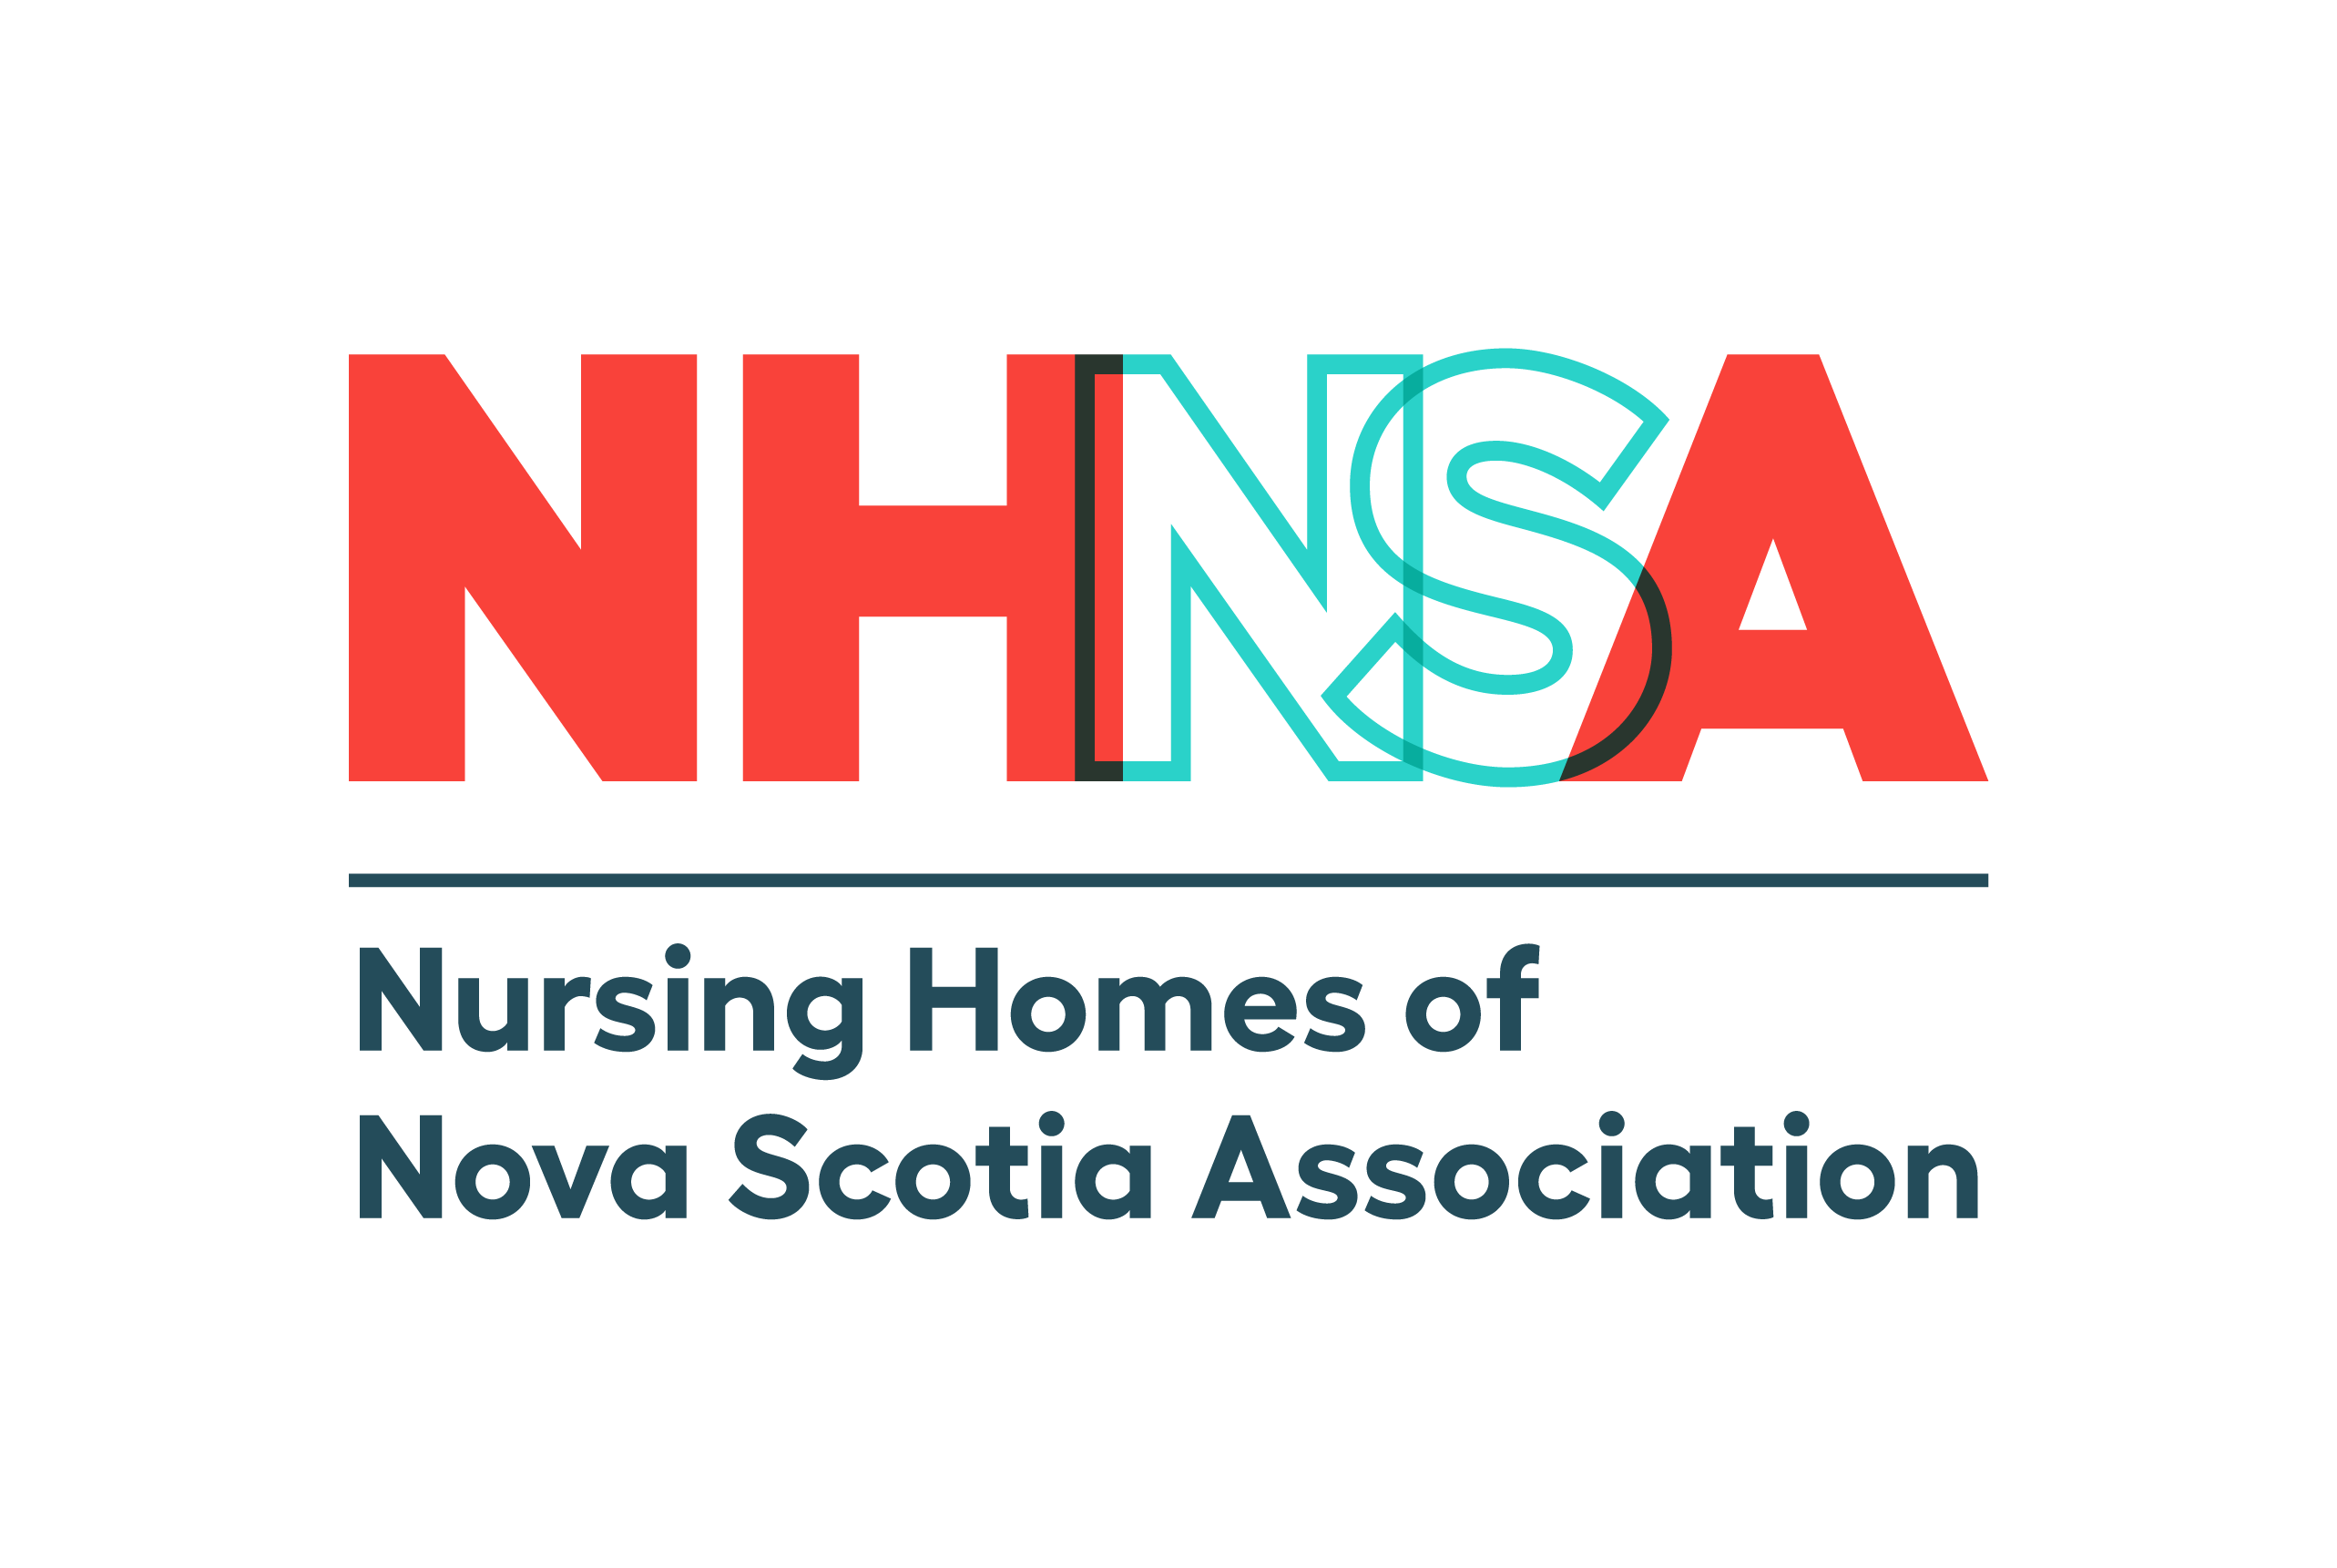 NHNSA - Nursing Homes of Nova Scotia Association